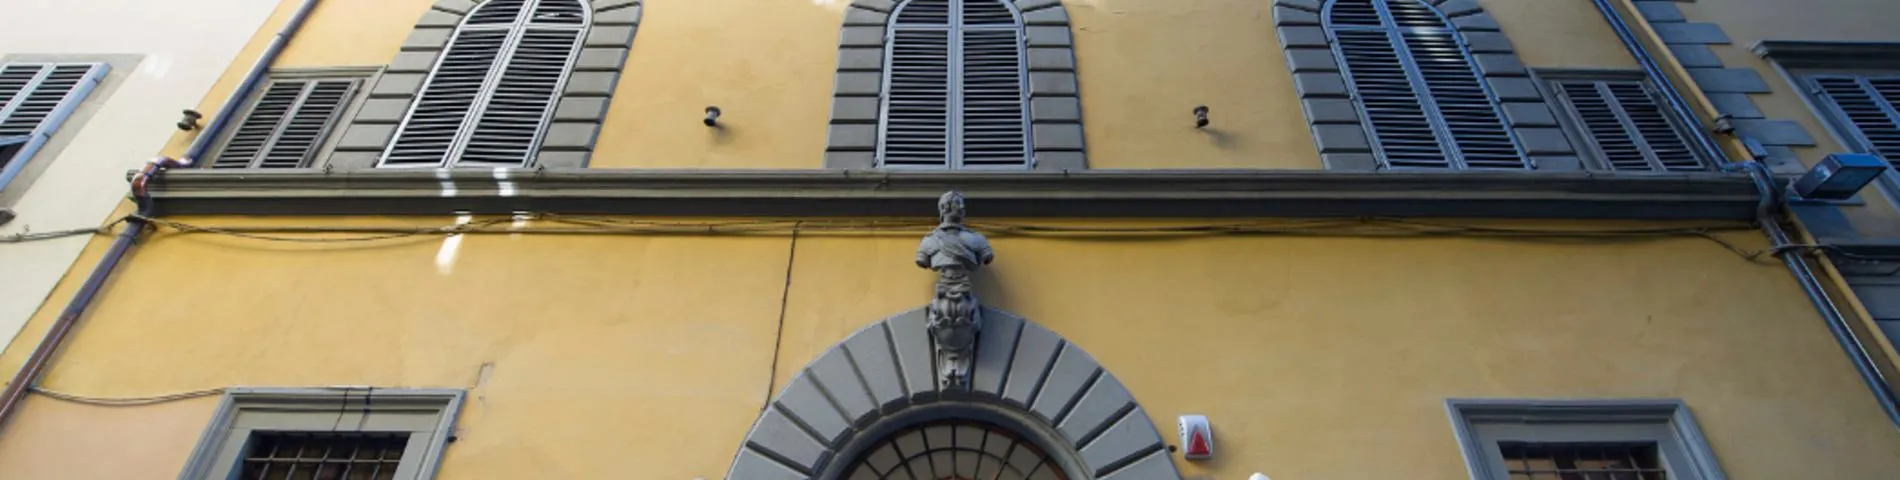 Scuola Lorenzo de Medici picture 1